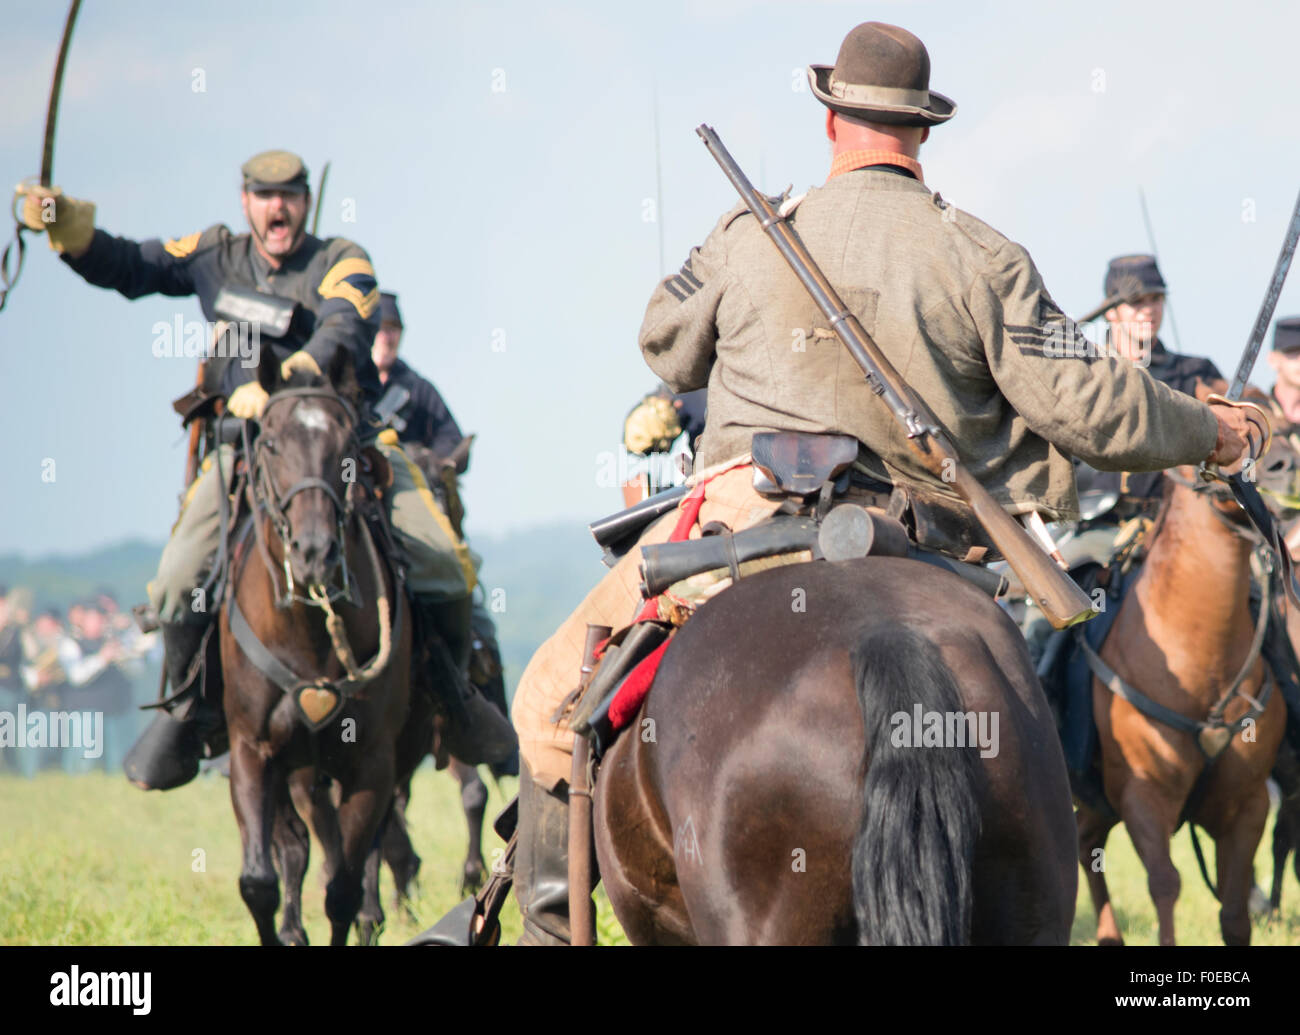 Reconstitution de bataille de Gettysburg, charge de cavalerie entre Union européenne et armées confédérées. Banque D'Images